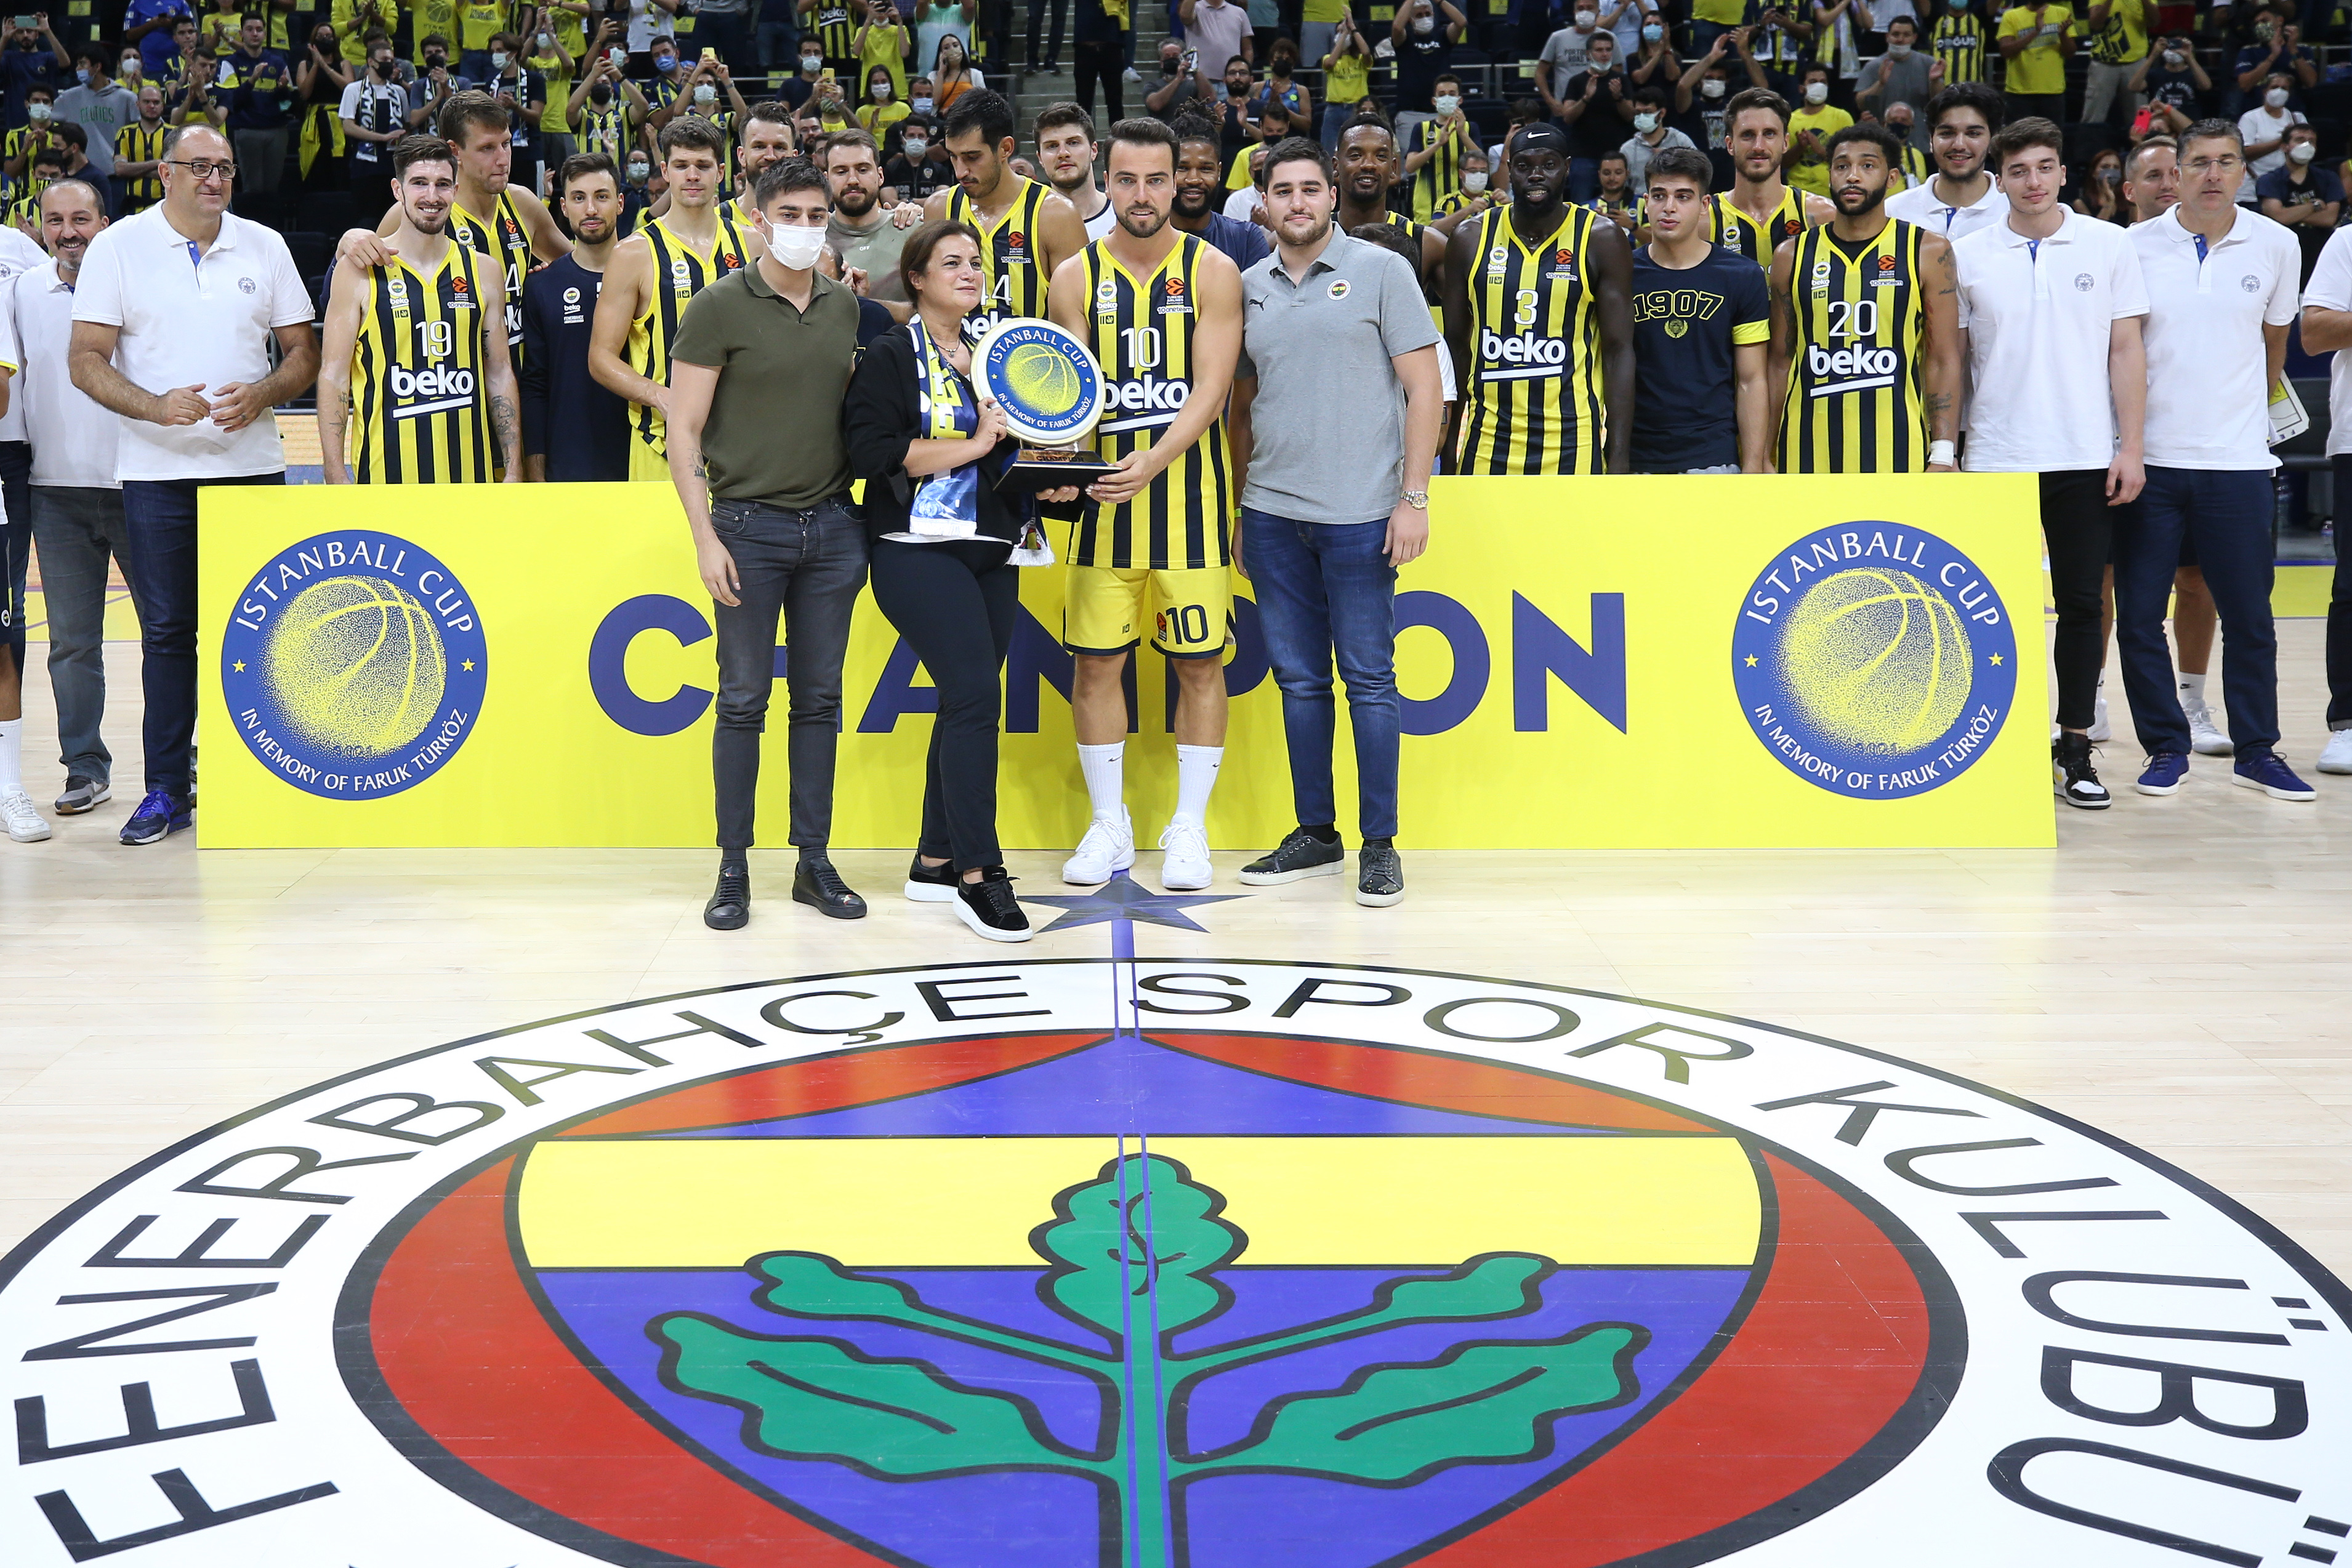 <p>Turnuvada ikincilik ödülünü ise 1907 Derneği Başkanı Rıfat Perahya ve Ankara Fenerbahçeliler Derneği Başkanı Erol Özel takdim etti.</p>